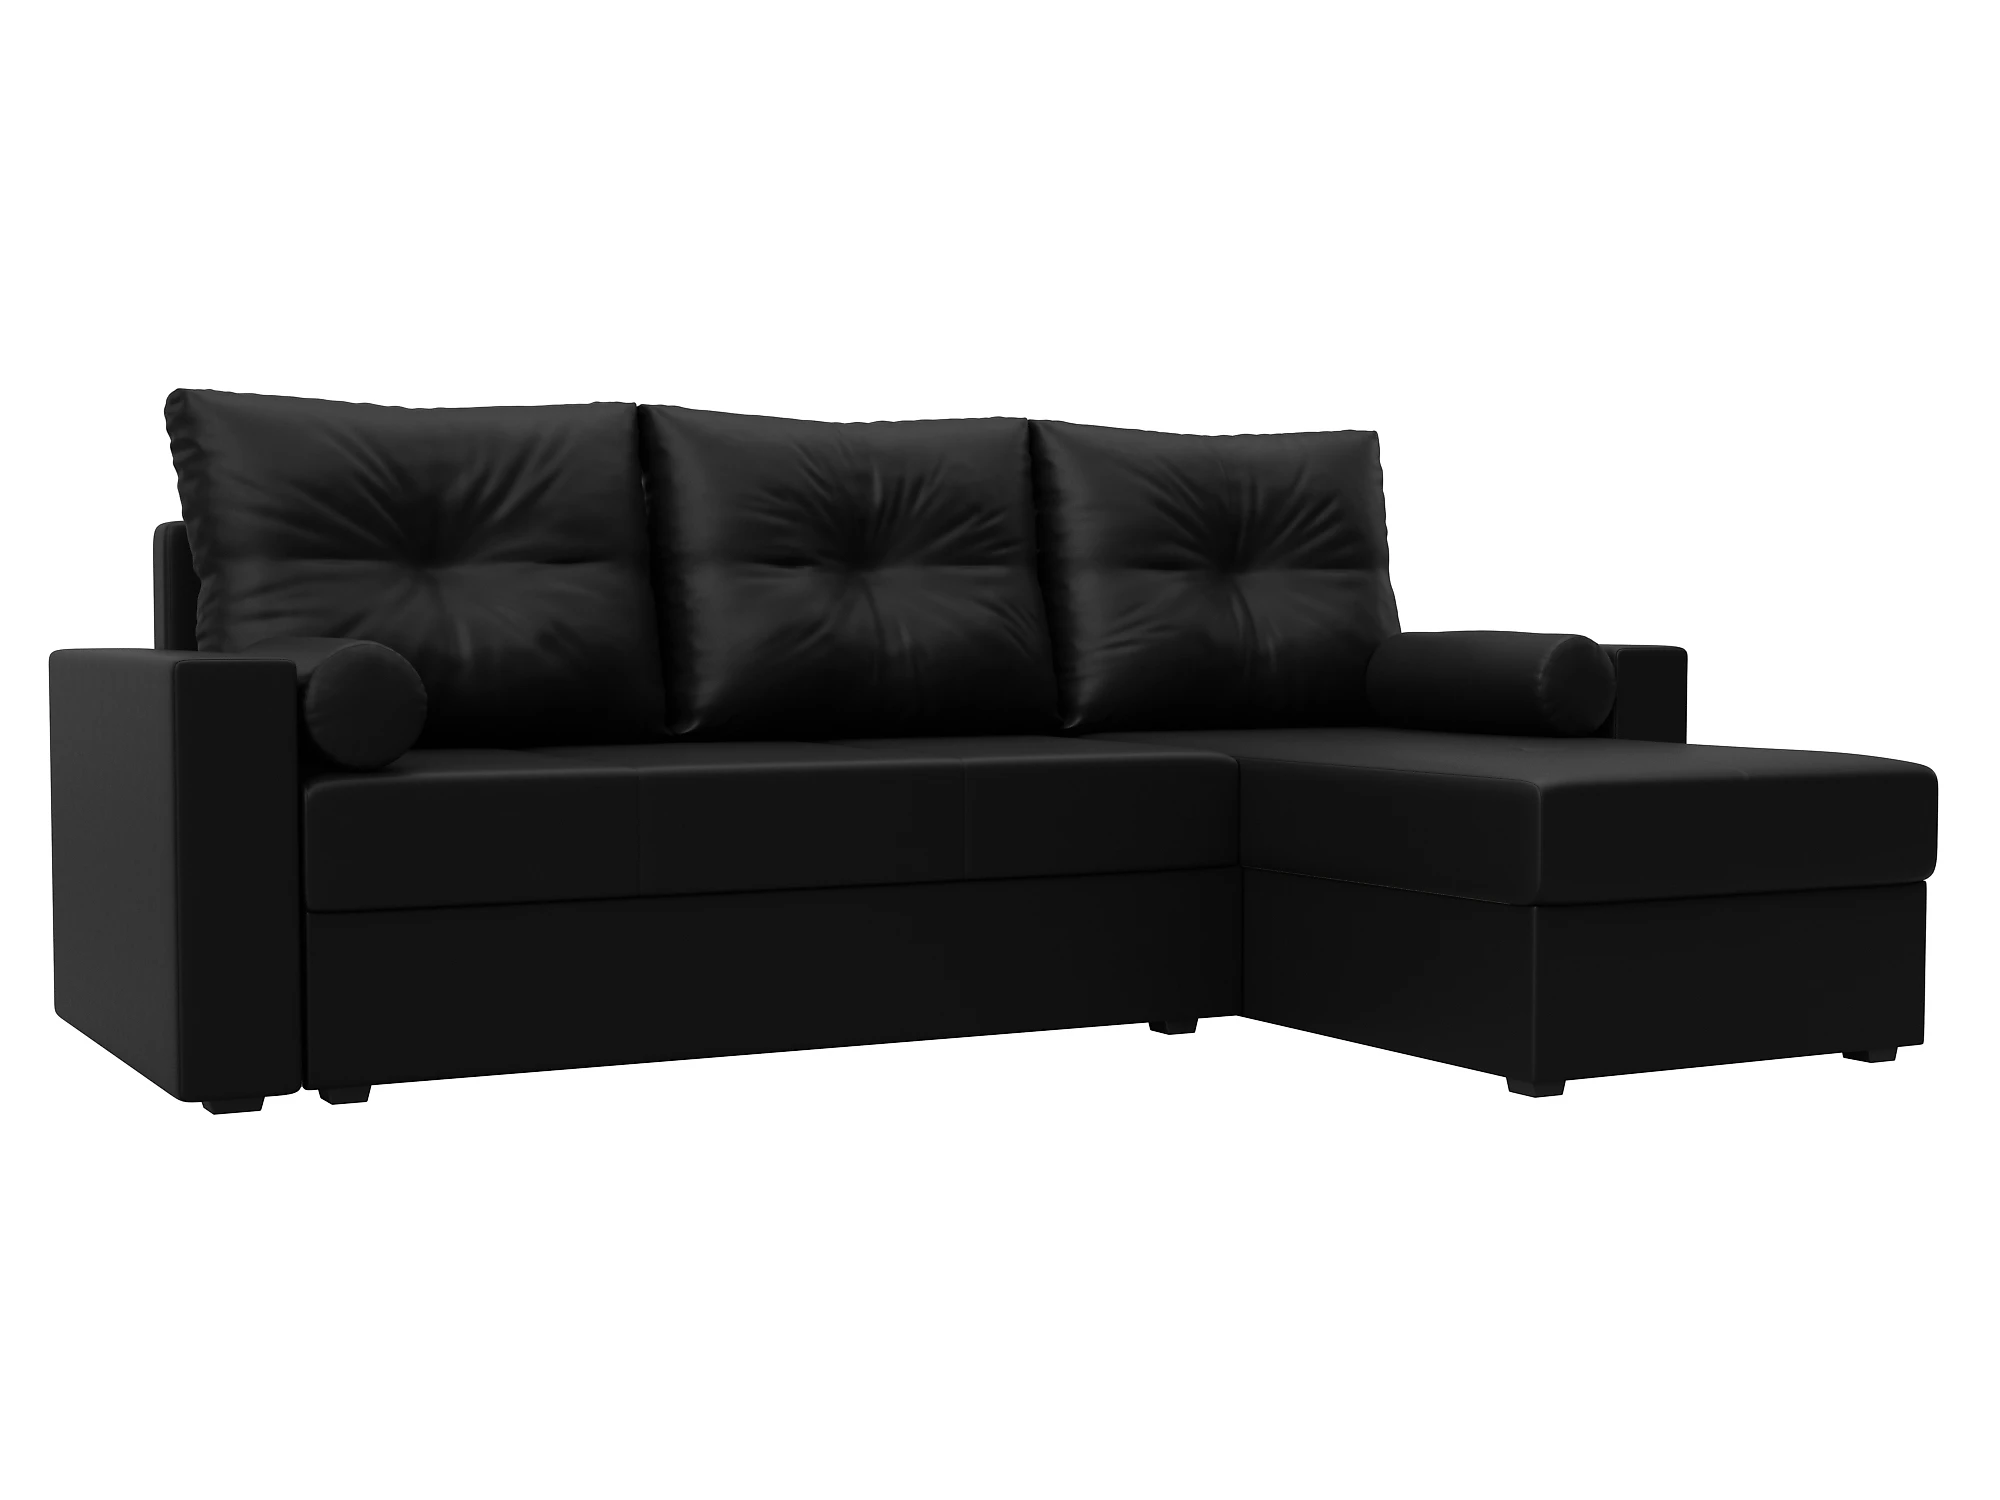  кожаный диван еврокнижка Верона Лайт Дизайн 15